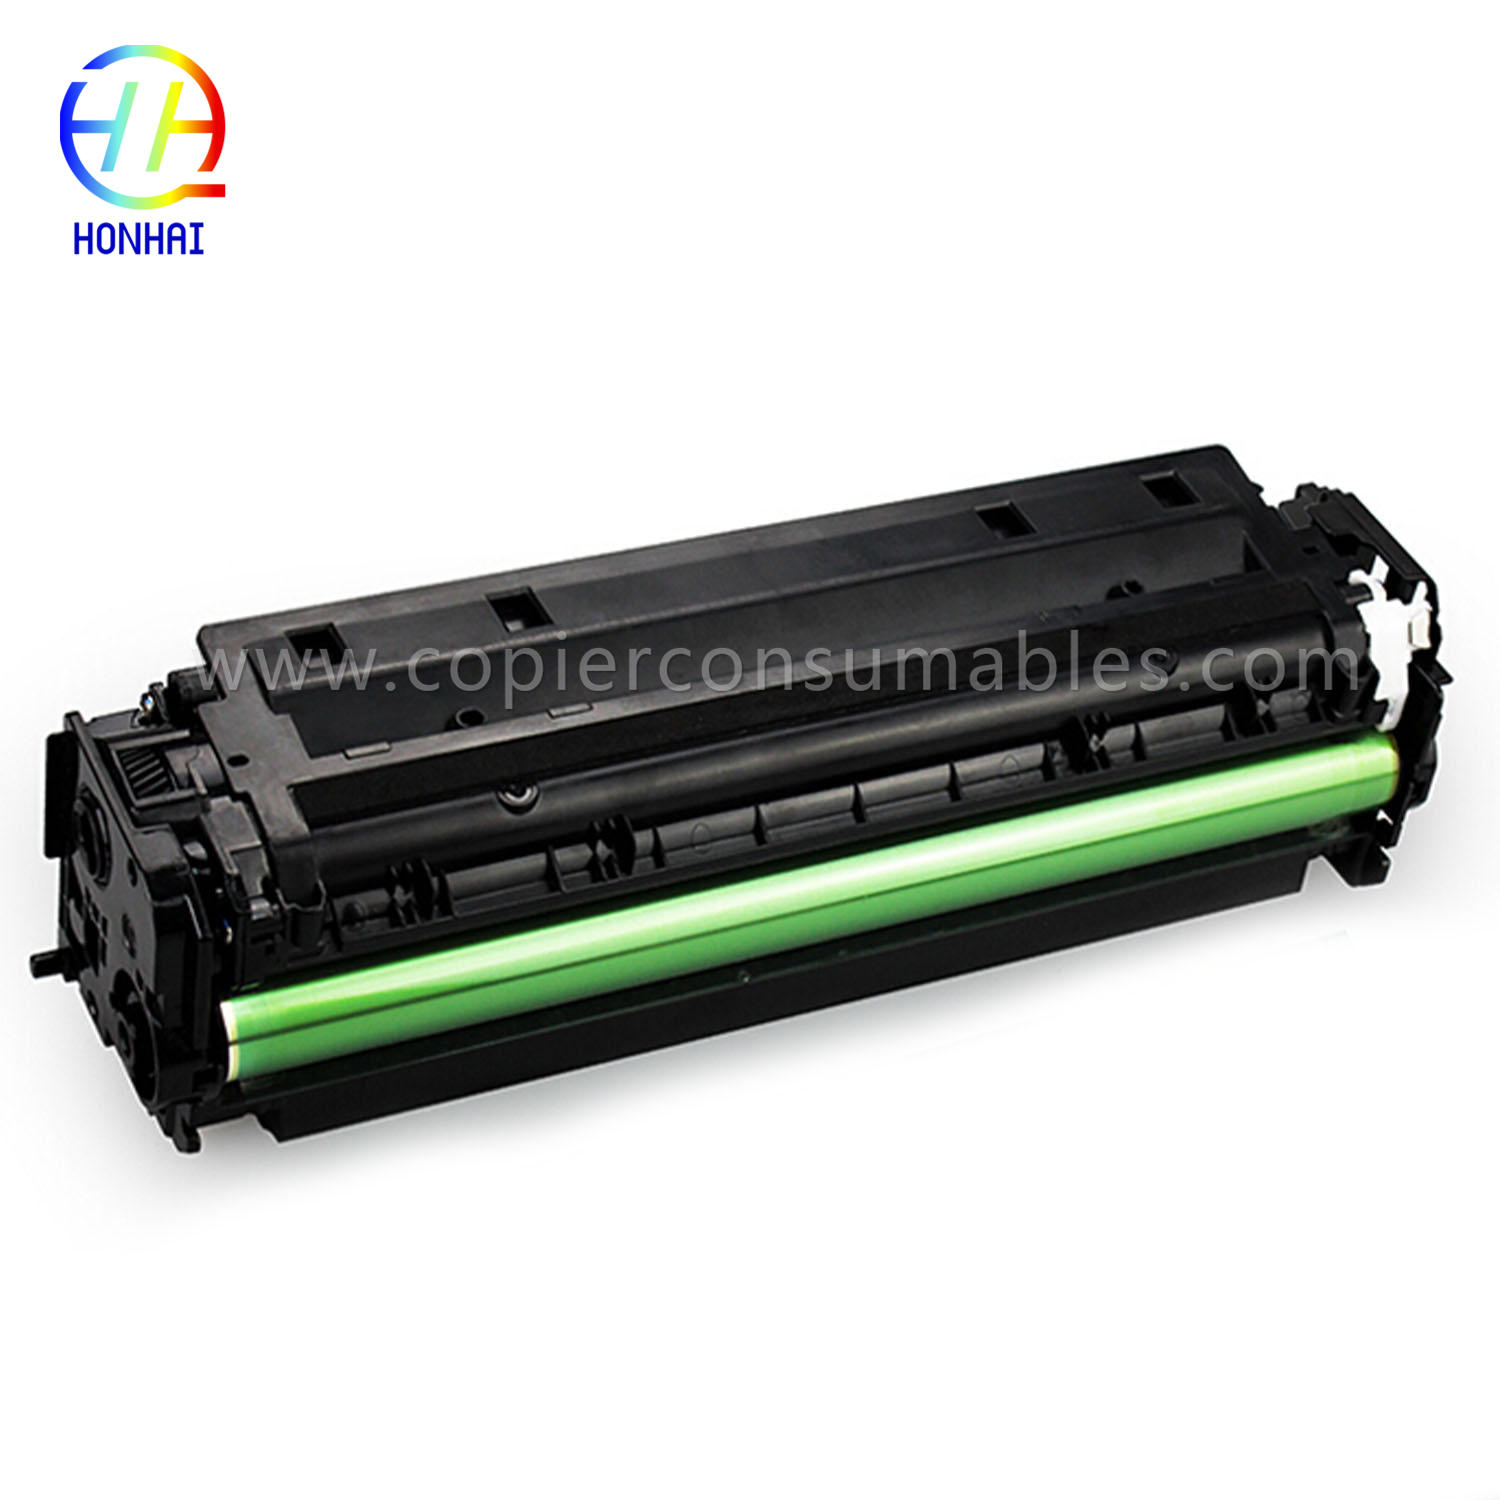 Toner Cartridge para sa HP Laserjet PRO 400 Color Mfp M451nw M451DN M451dw PRO 300 Color Mfp M375nw (CE410A)